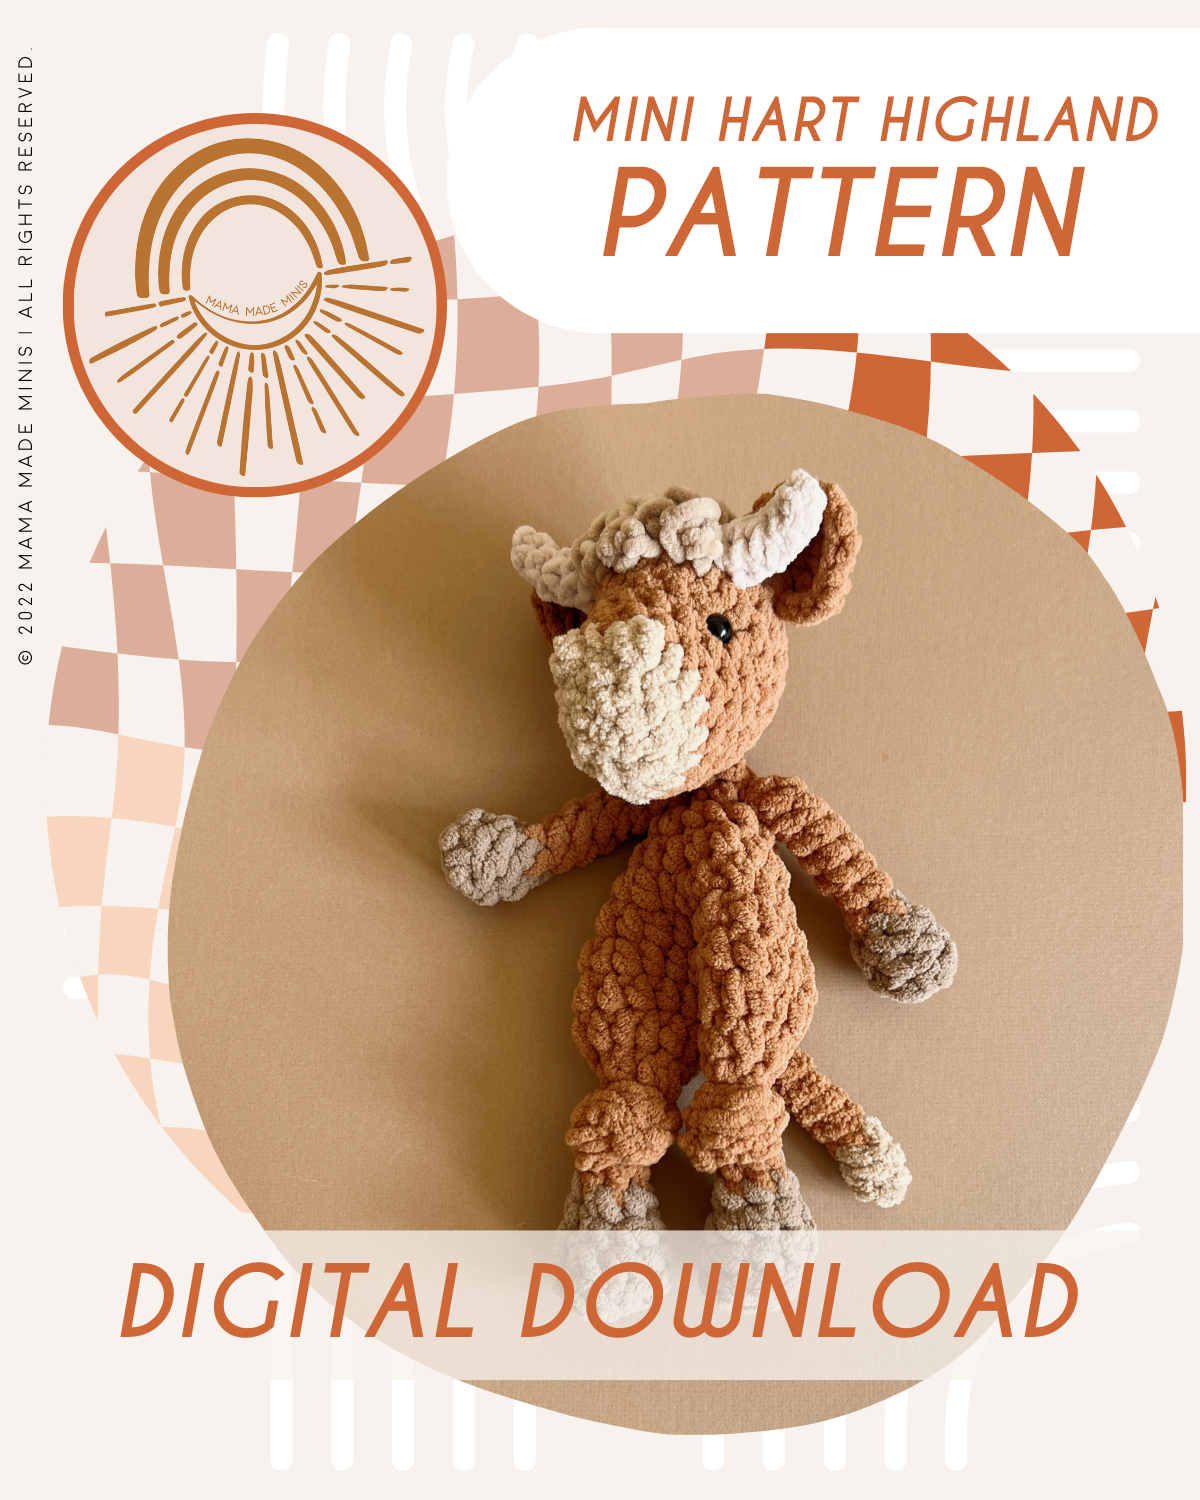 Cute Amigurumi Highland Cow Crochet Pattern